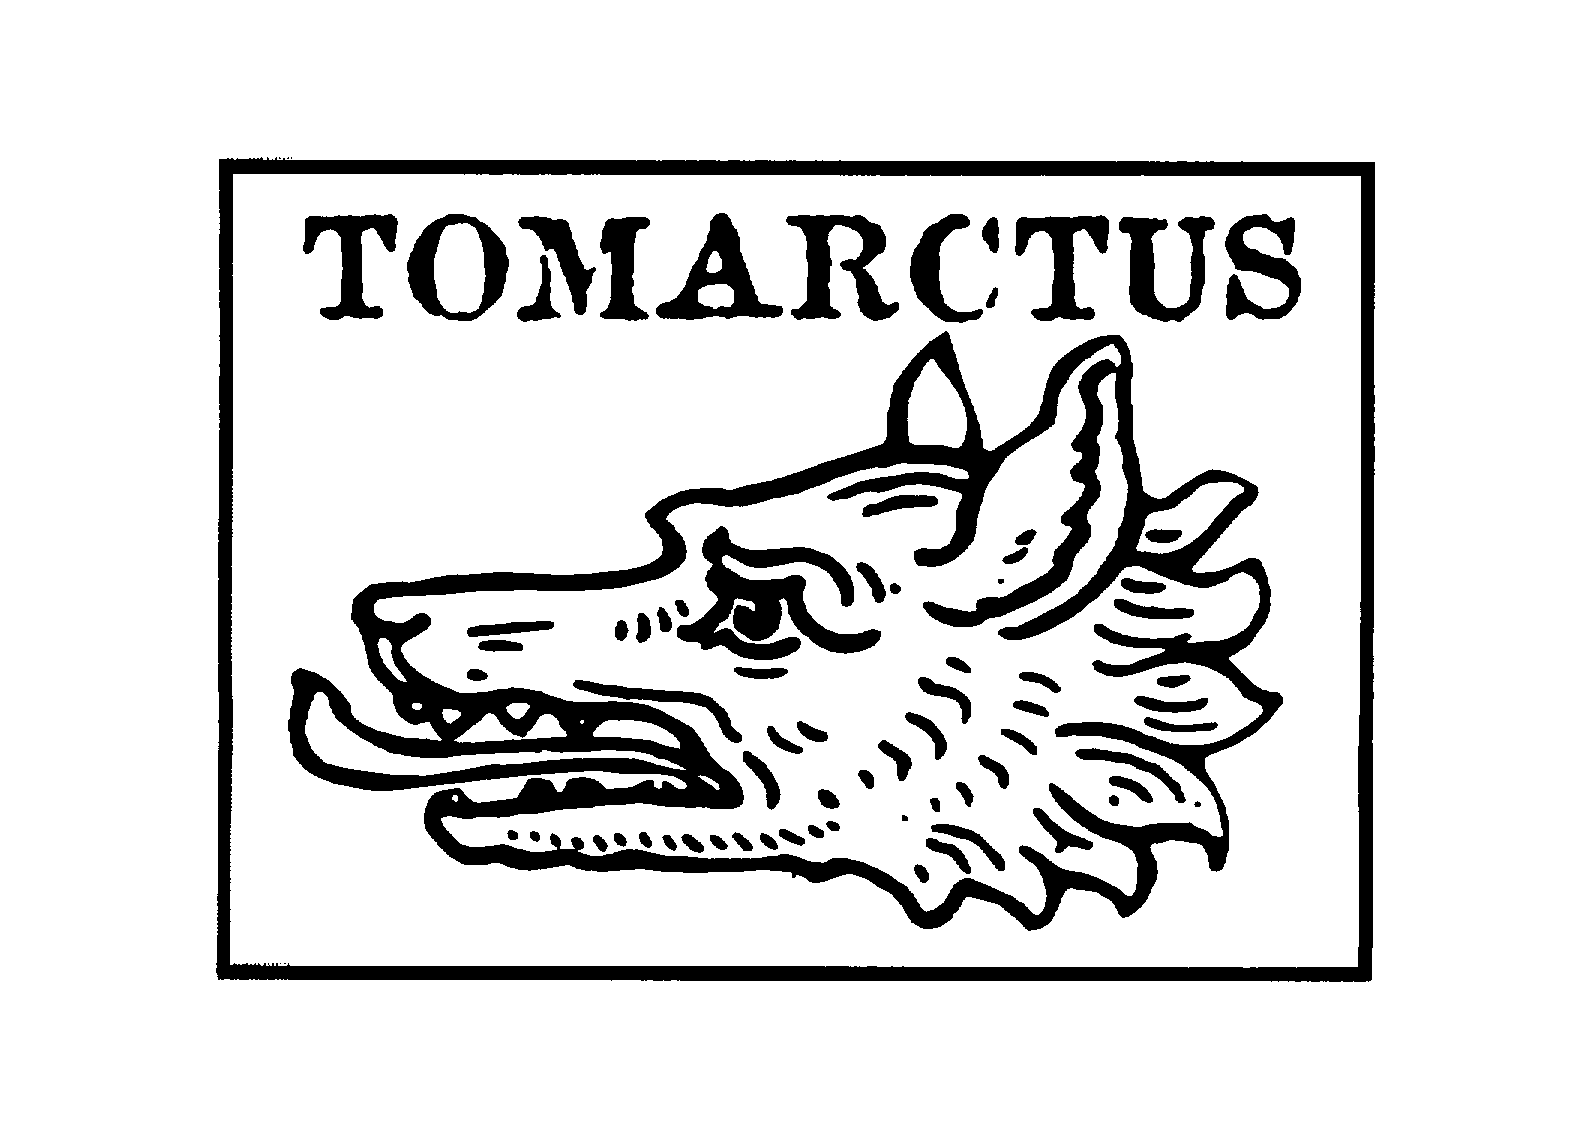  TOMARCTUS